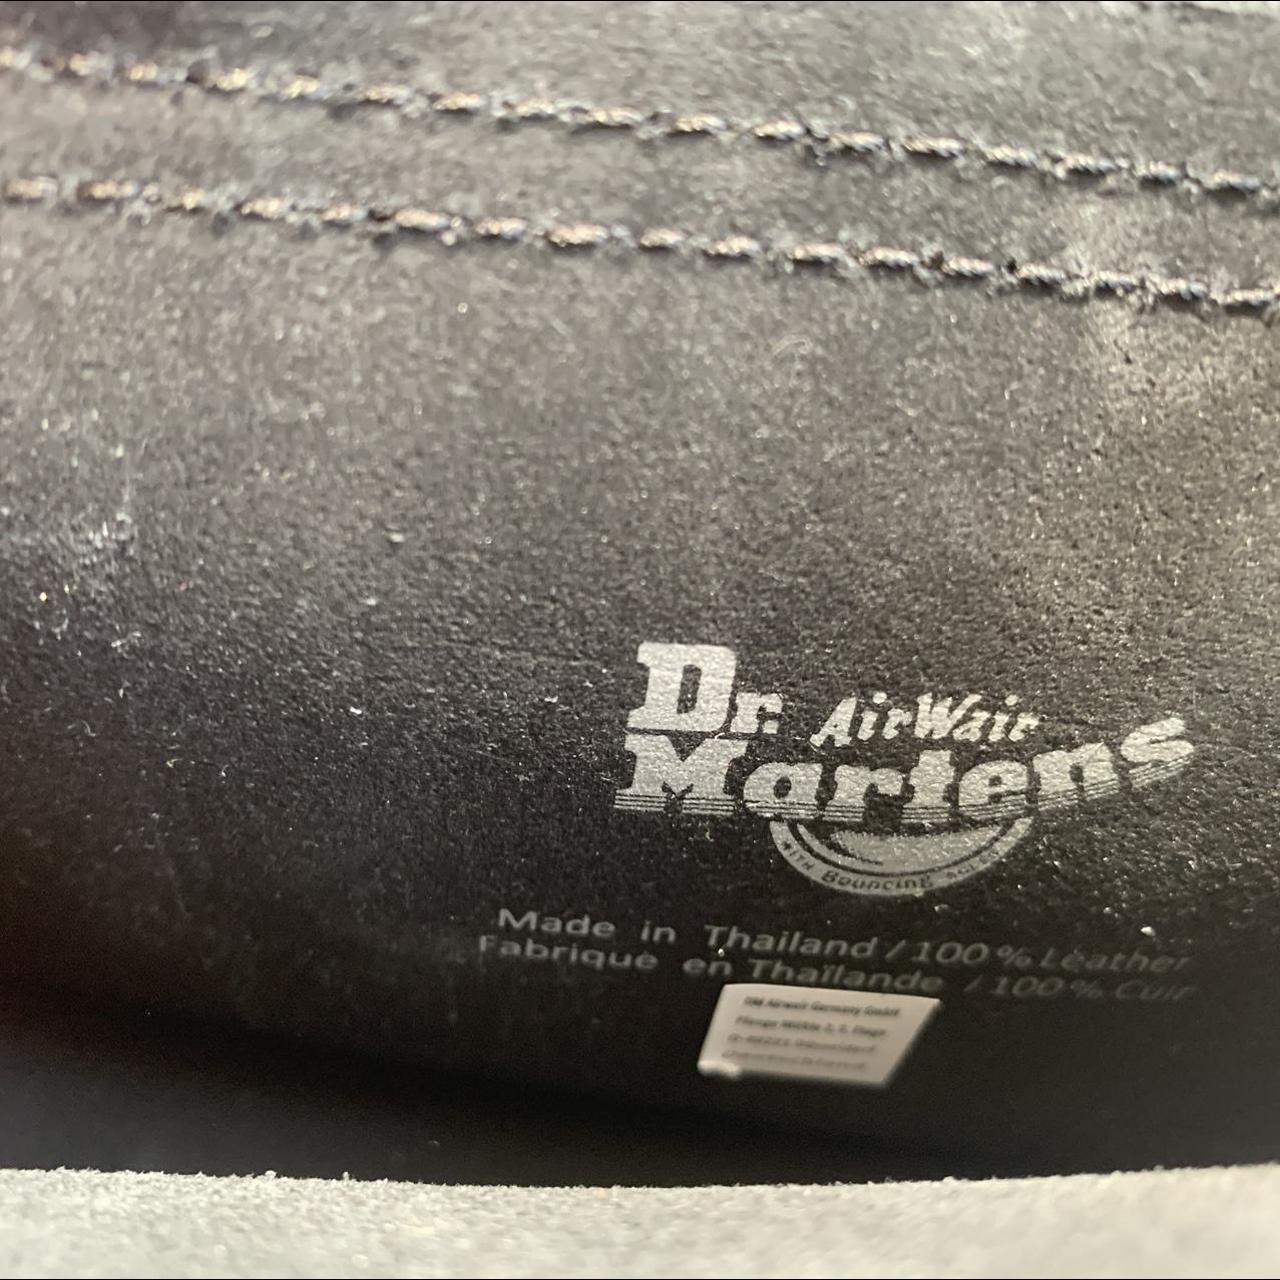 Dr Martens 7 in leather satchel pre-order! Hi! I - Depop